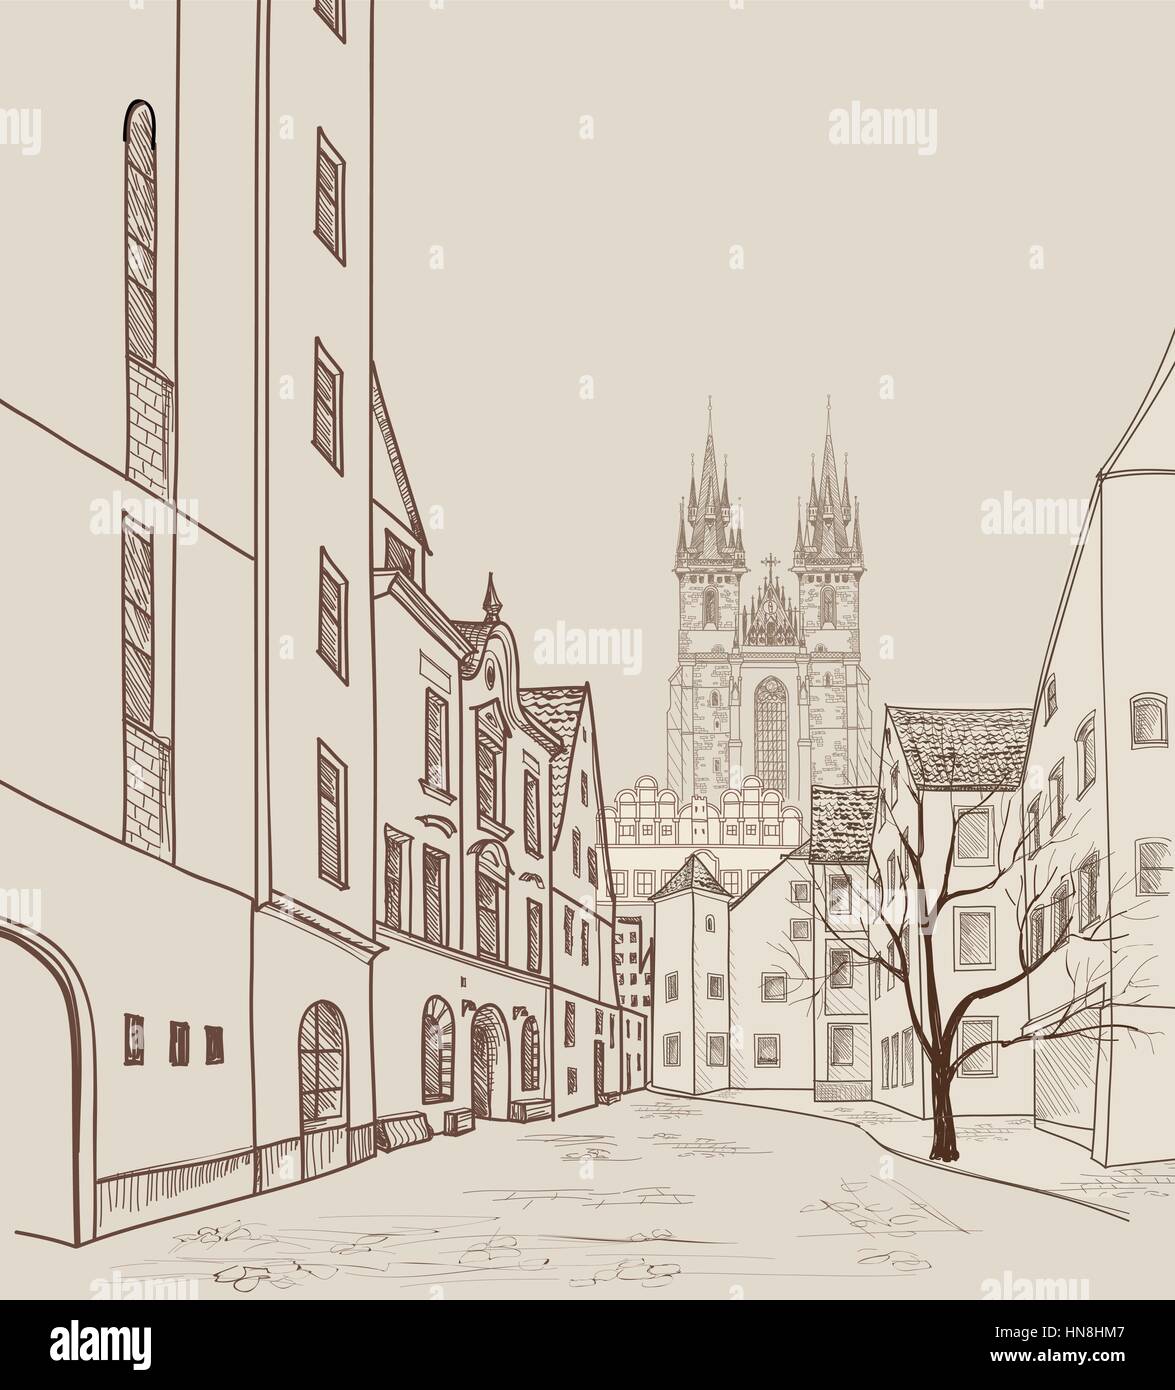 Die Altstadt von Prag, tschechische Republik. Fußgängerzone in der alten europäischen Stadt mit Turm im Hintergrund. Historische Stadt Prag bakcg Straße. Stock Vektor